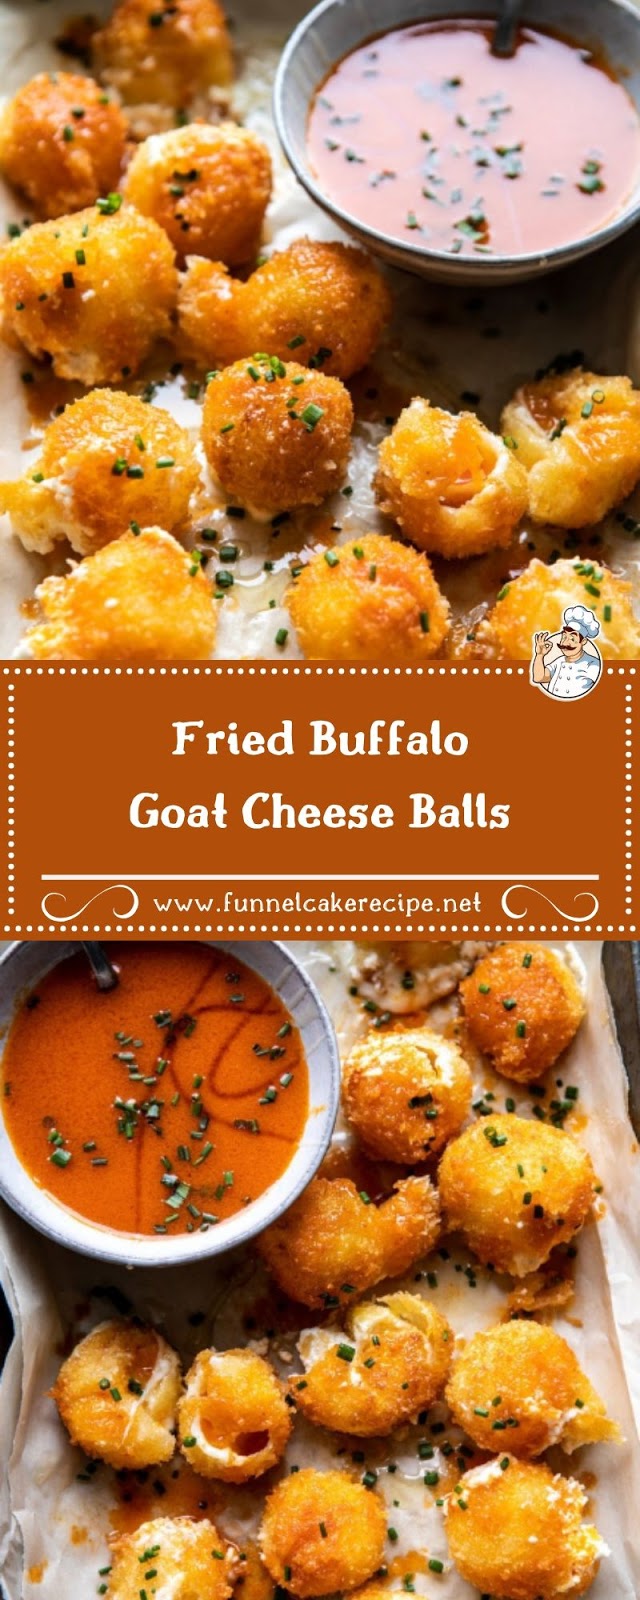 Fried Buffalo Goat Cheese Balls